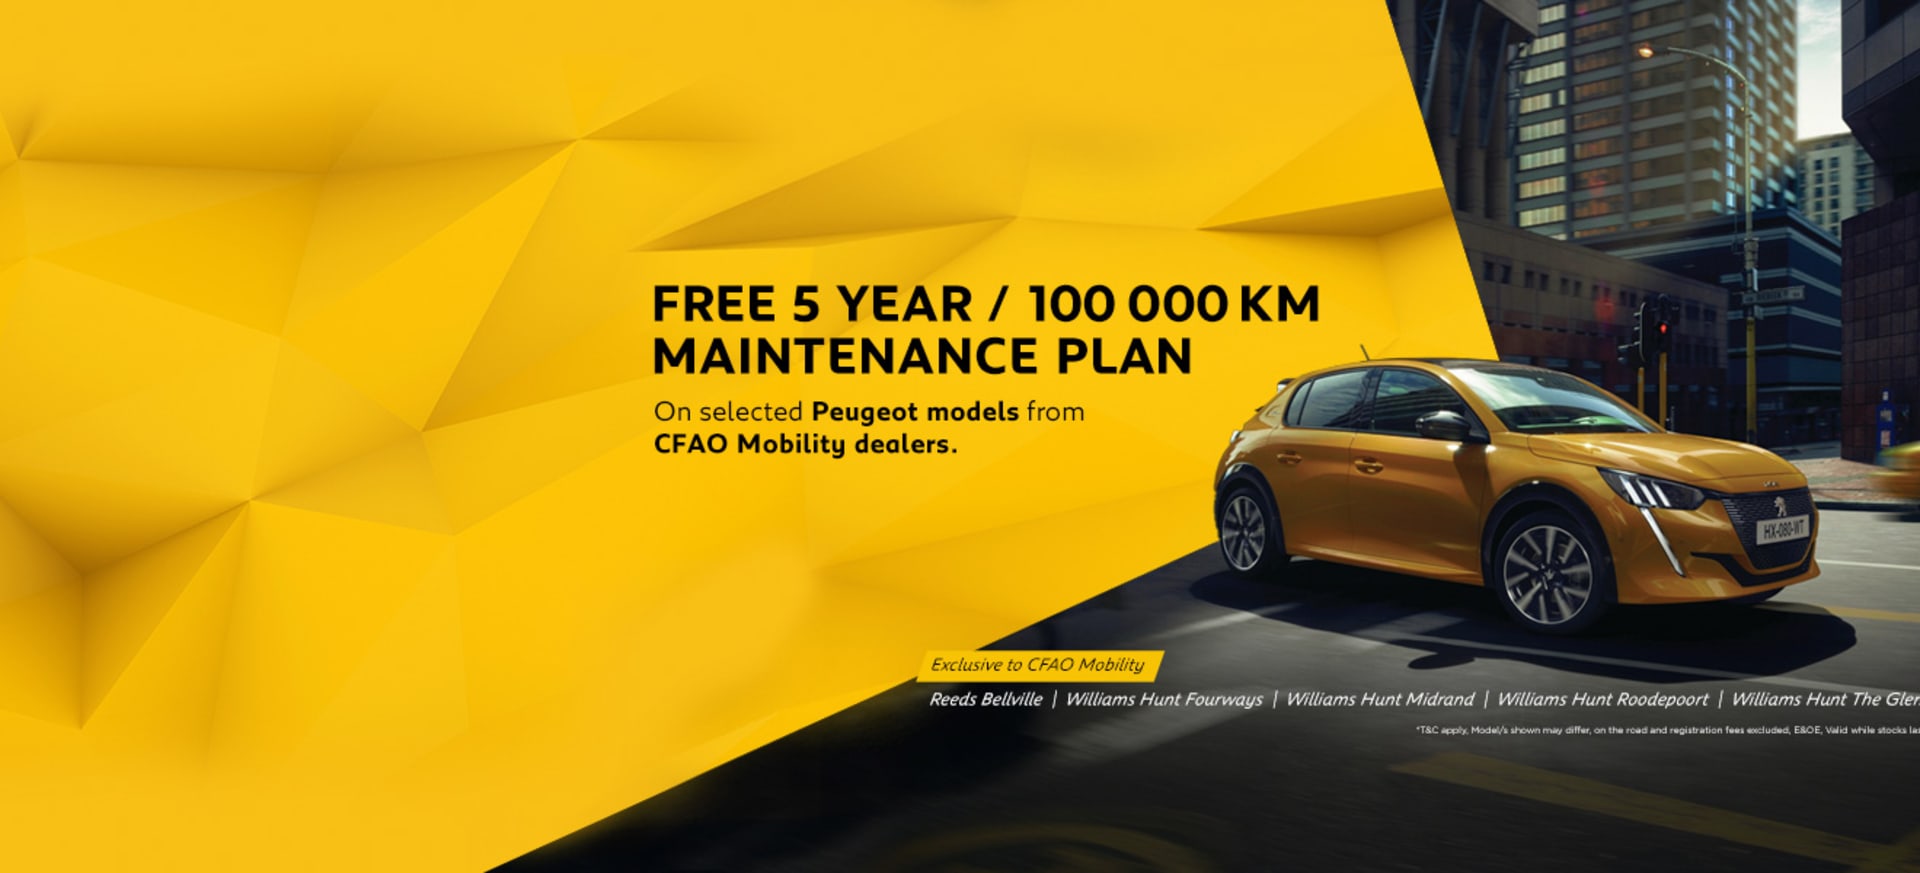 Peugeot FREE 5 Year / 100 000km Maintenance Plan